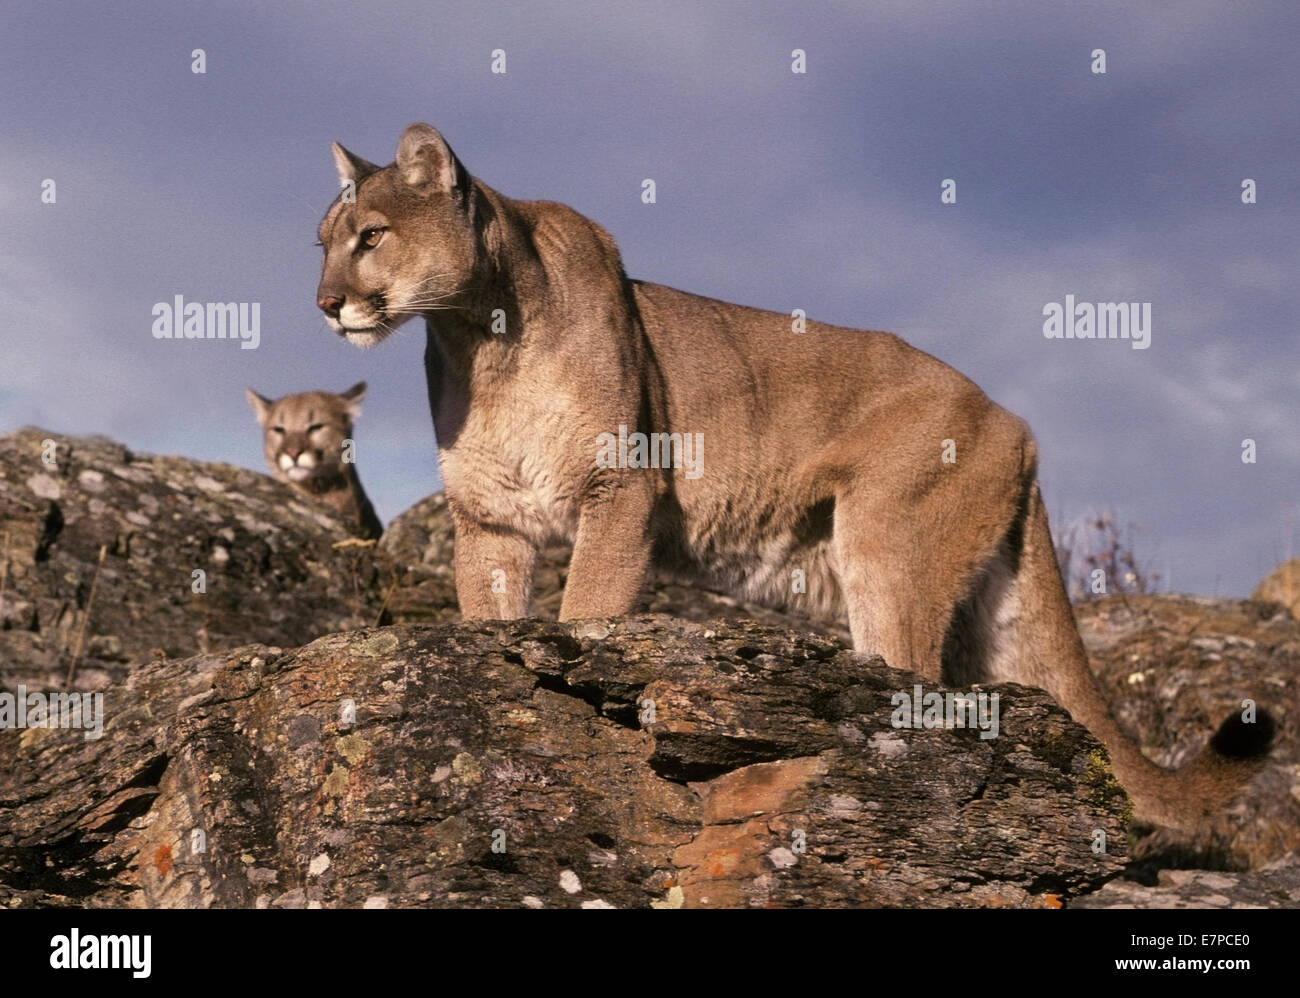 El león de montaña (Felis concolor) Puma o Puma. Los Leones de montaña son generalmente animales solitarios que se las primeras horas de la mañana o Fotografía de stock -